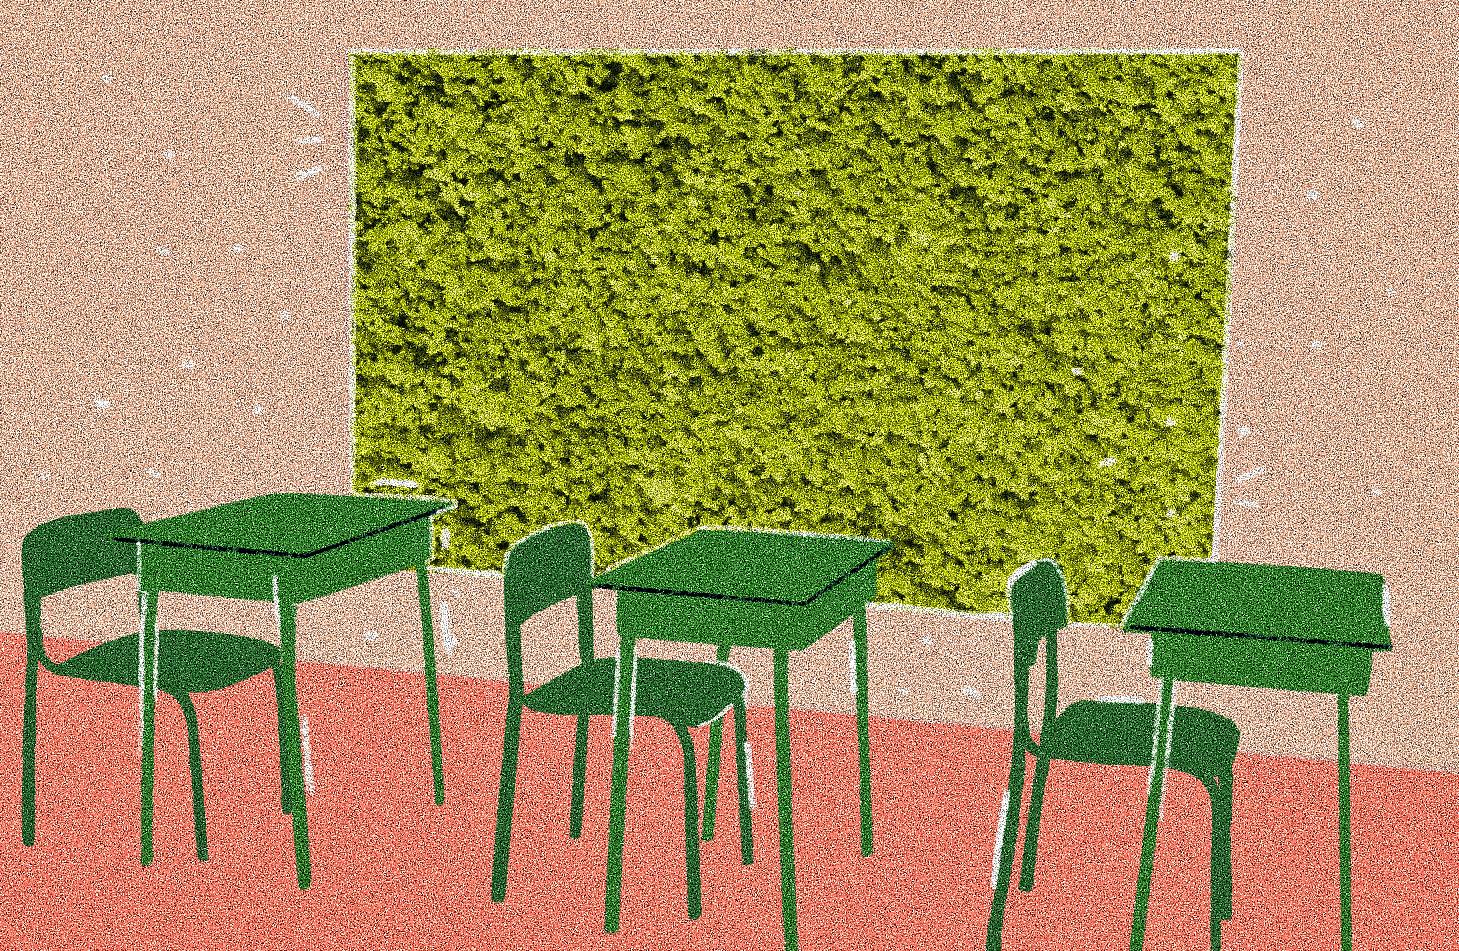 Descrição da imagem: ilustração horizontal e colorida de um jardim vertical em uma sala de aula. Há três mesas com cadeiras na cor verde escuro enfileiradas. Ao fundo, na parede, retângulo horizontal preenchido com grama na cor verde claro. A parede tem tom de rosa claro, e o piso, rosa queimado.